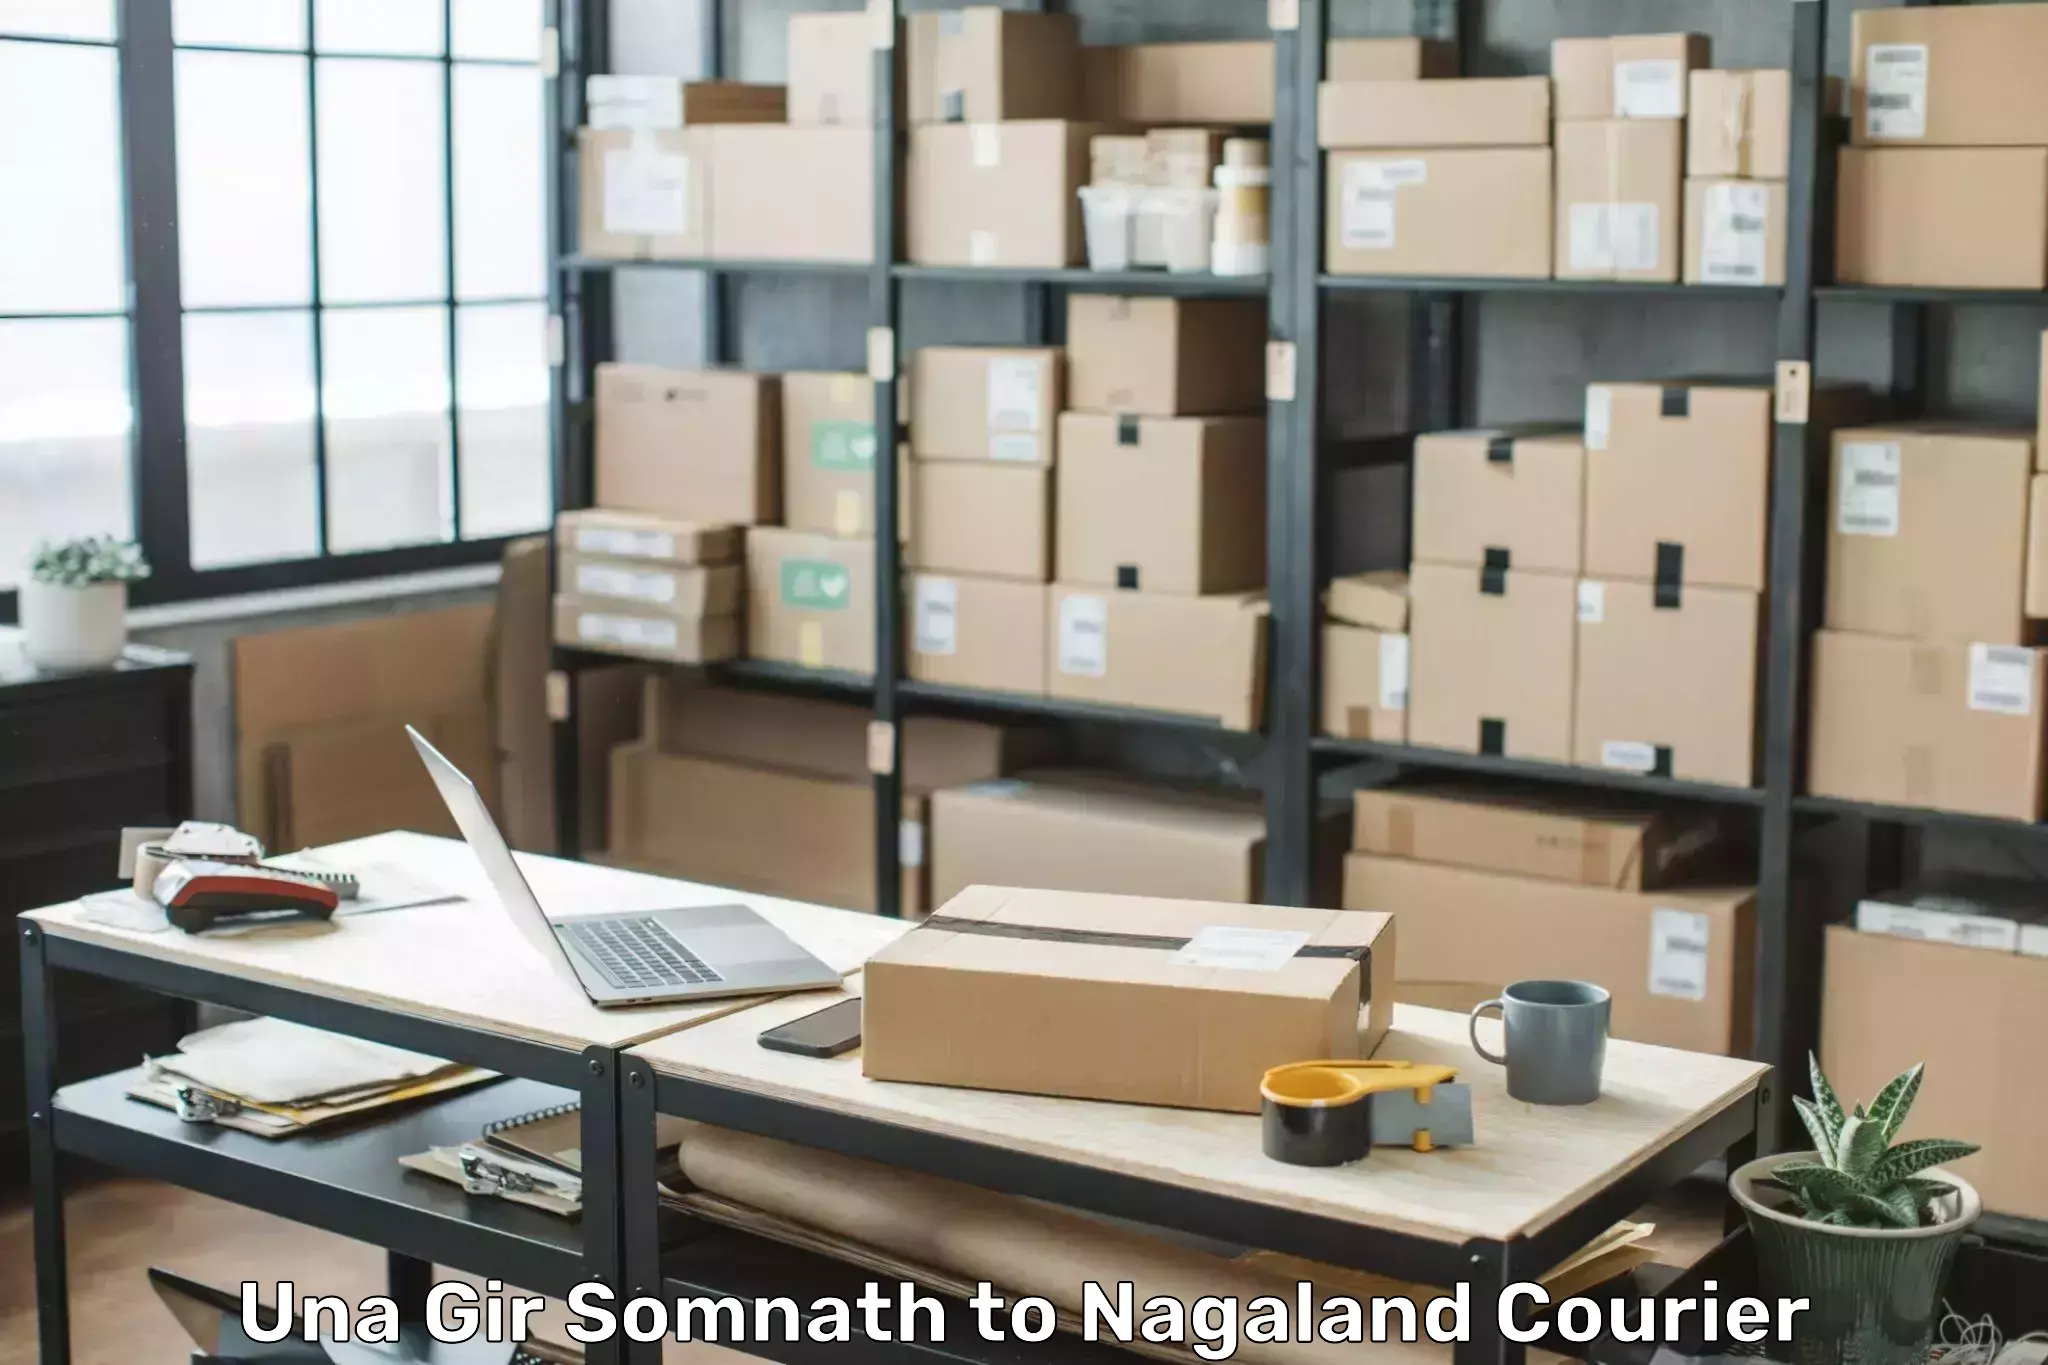 Luggage transfer service Una Gir Somnath to NIT Nagaland